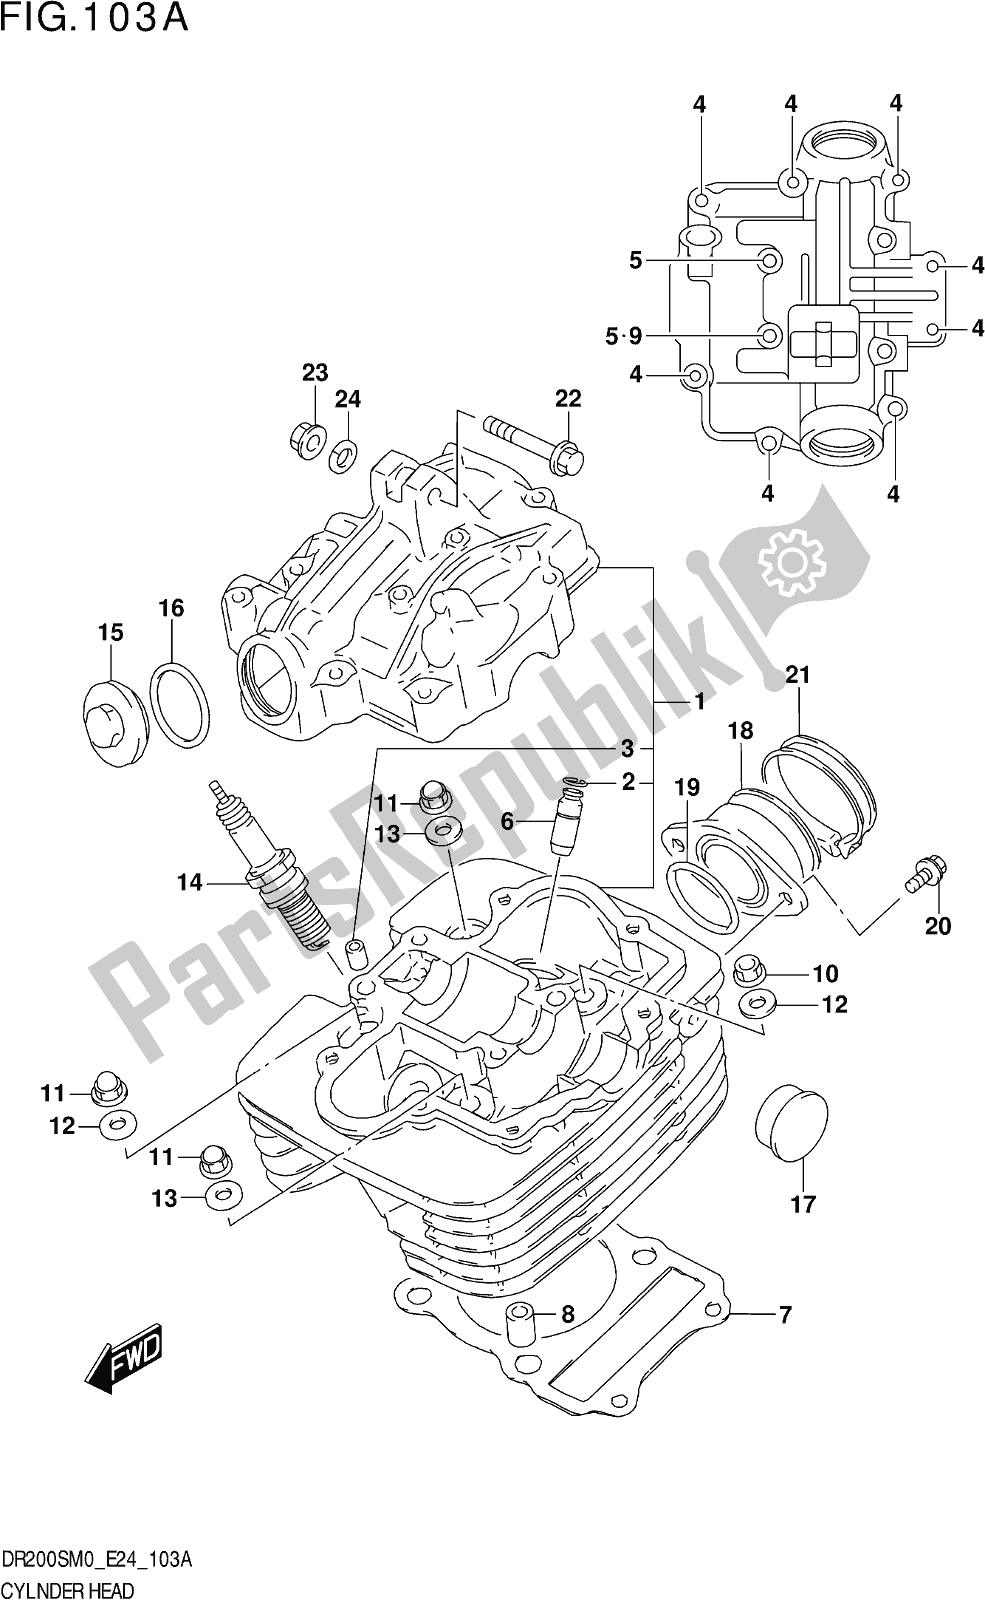 Alle onderdelen voor de Fig. 103a Cylinder Head van de Suzuki DR 200S 2020